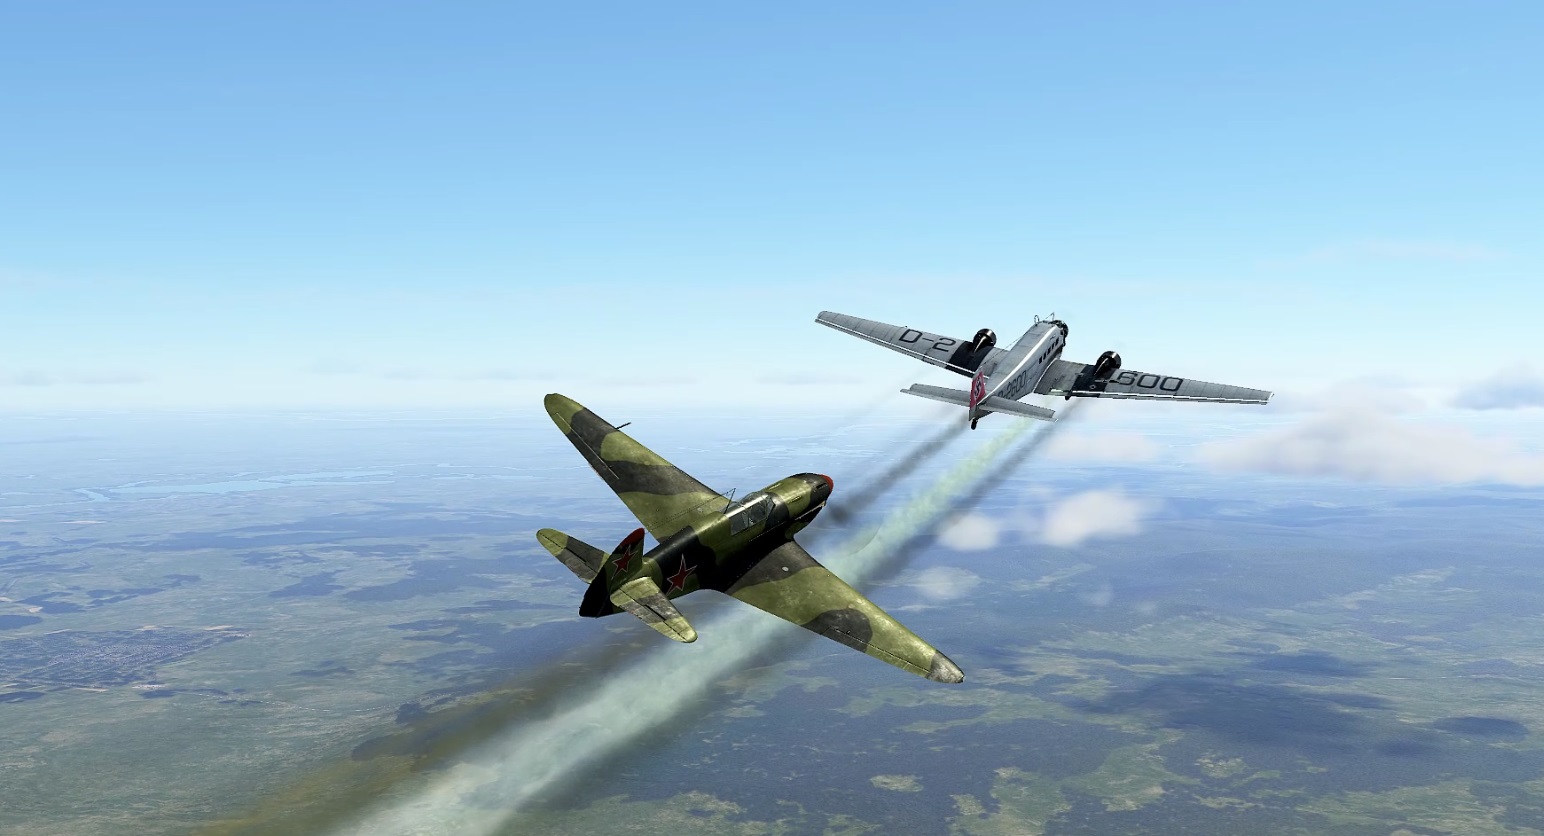 Як-7б перехват транспортного самолета под прикрытием Bf 109 E-7.